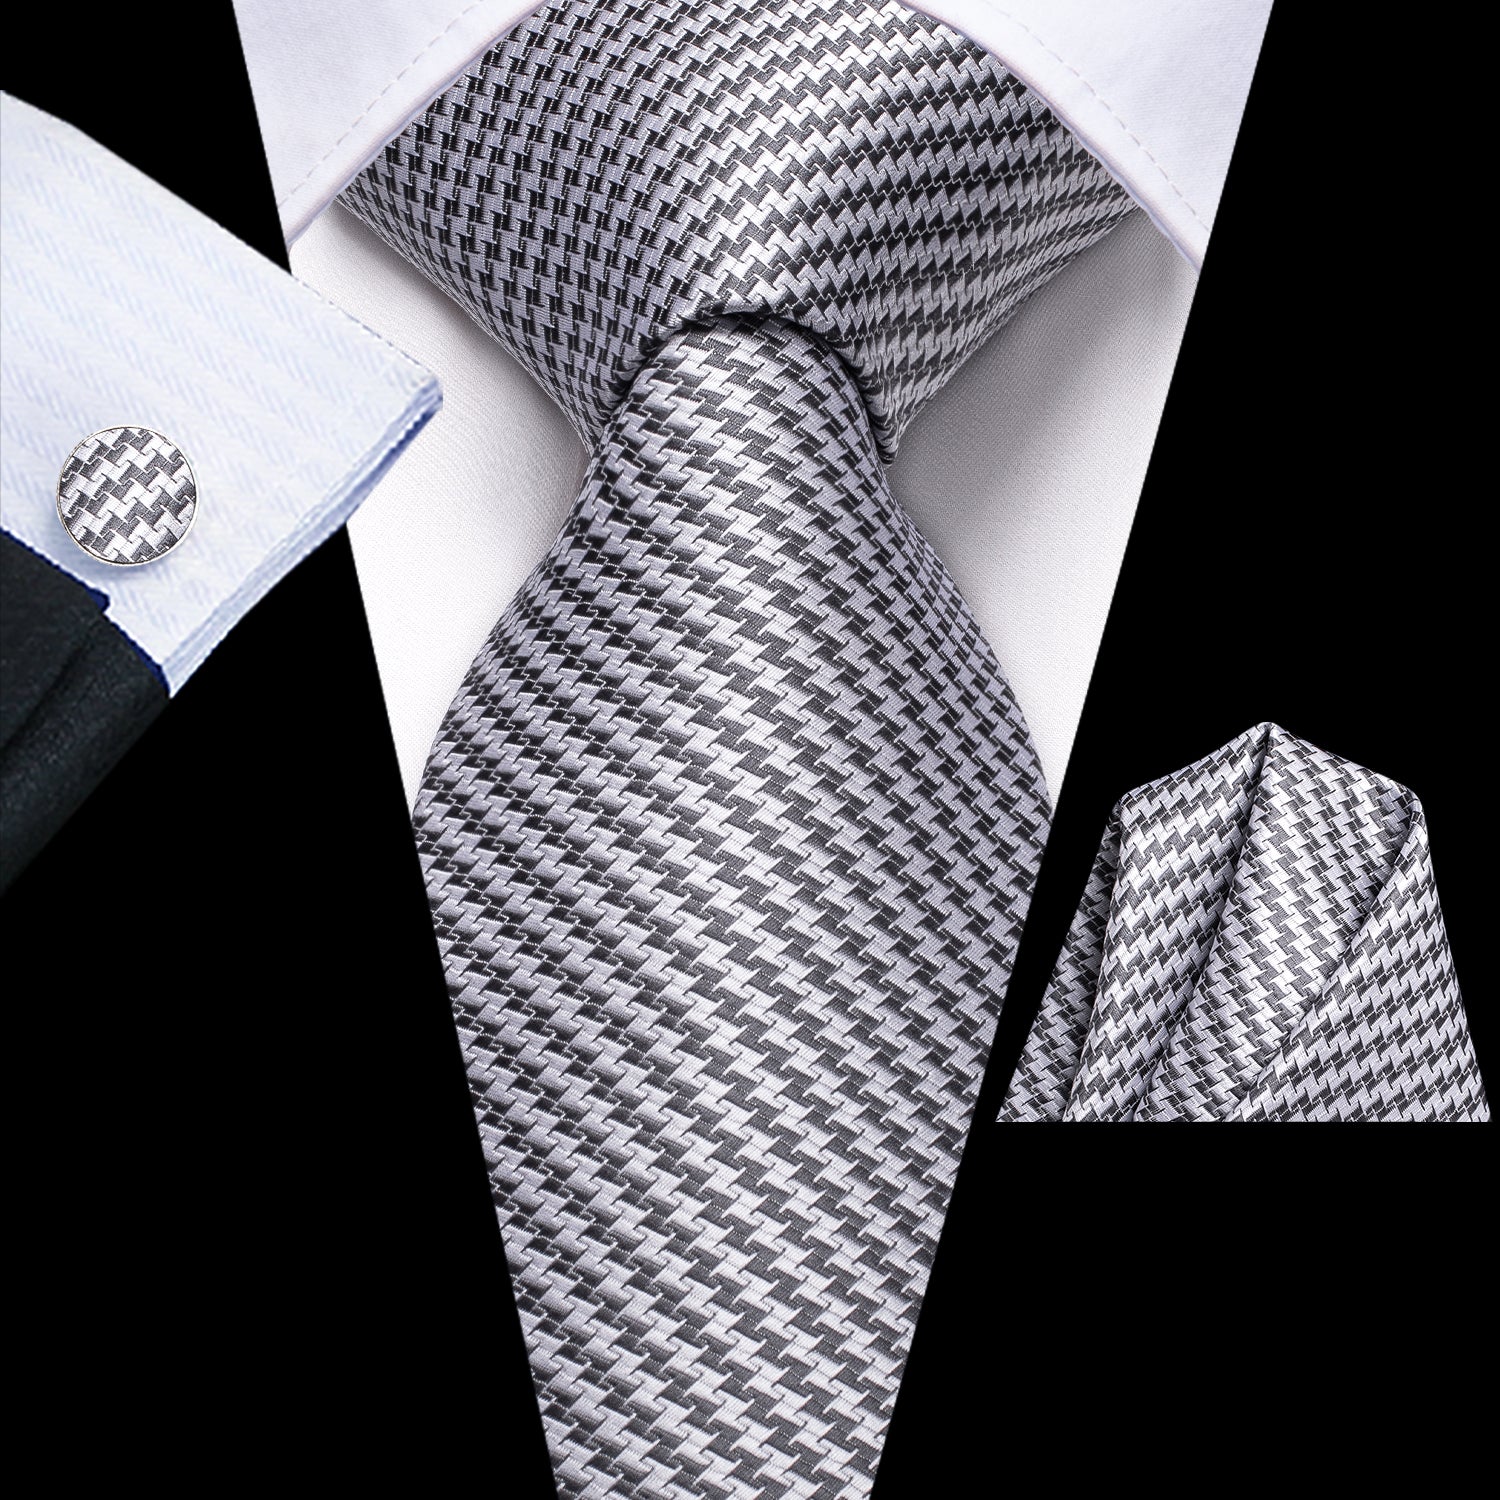 New Grey White Sawtooth Tie Pocket Square Cufflinks Set